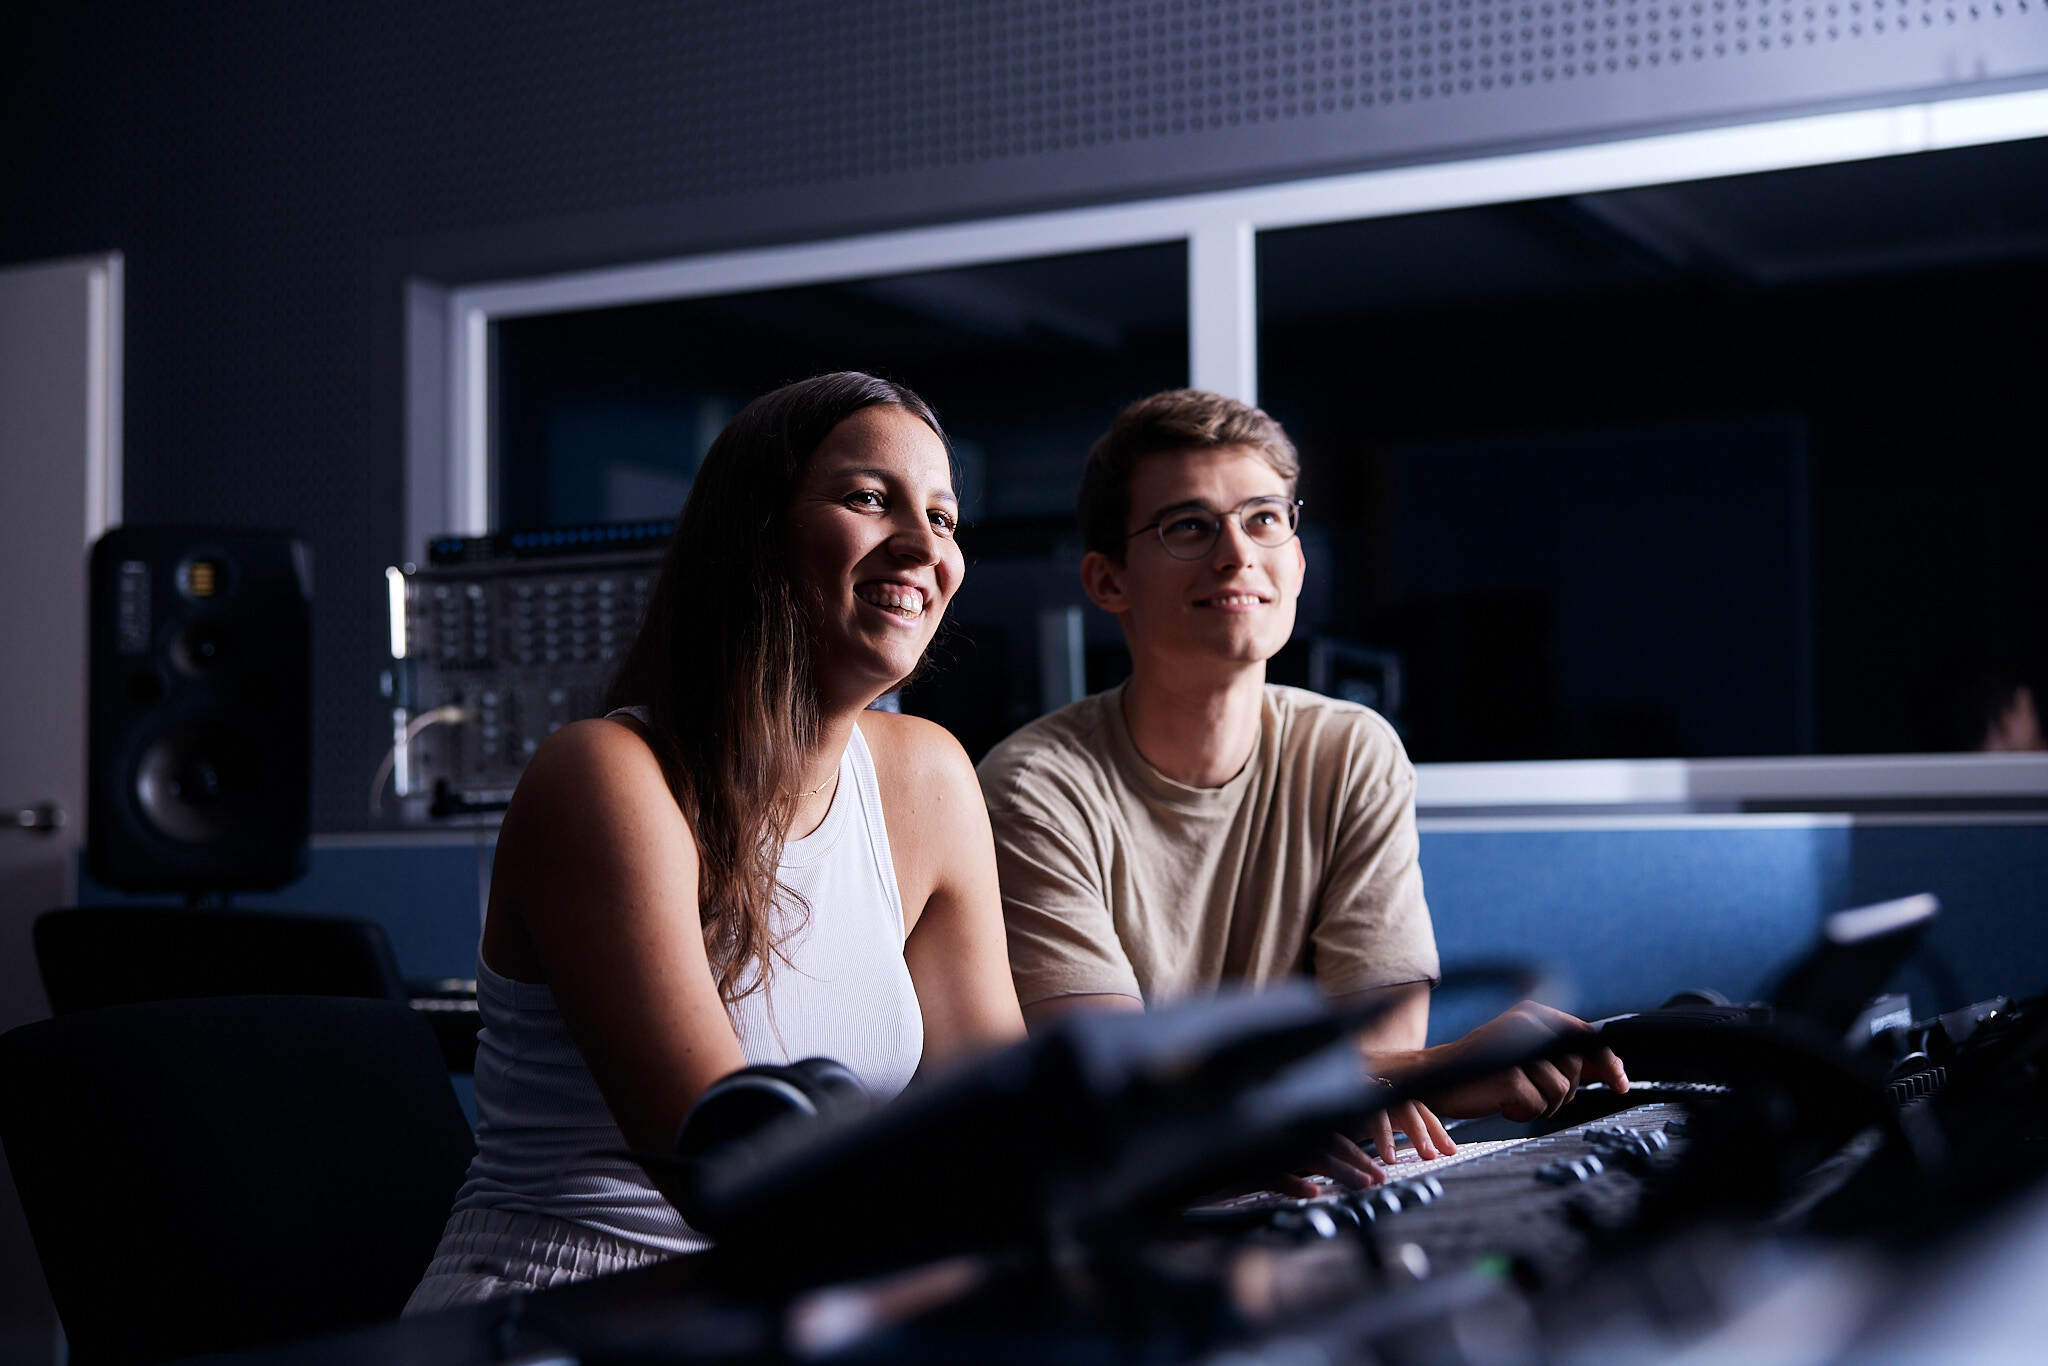 zwei junge Studenten sitzen in einem dunklen Raum und schauen gemeinsam auf einen Bildschirm der ihre Gesichter beleuchtet.